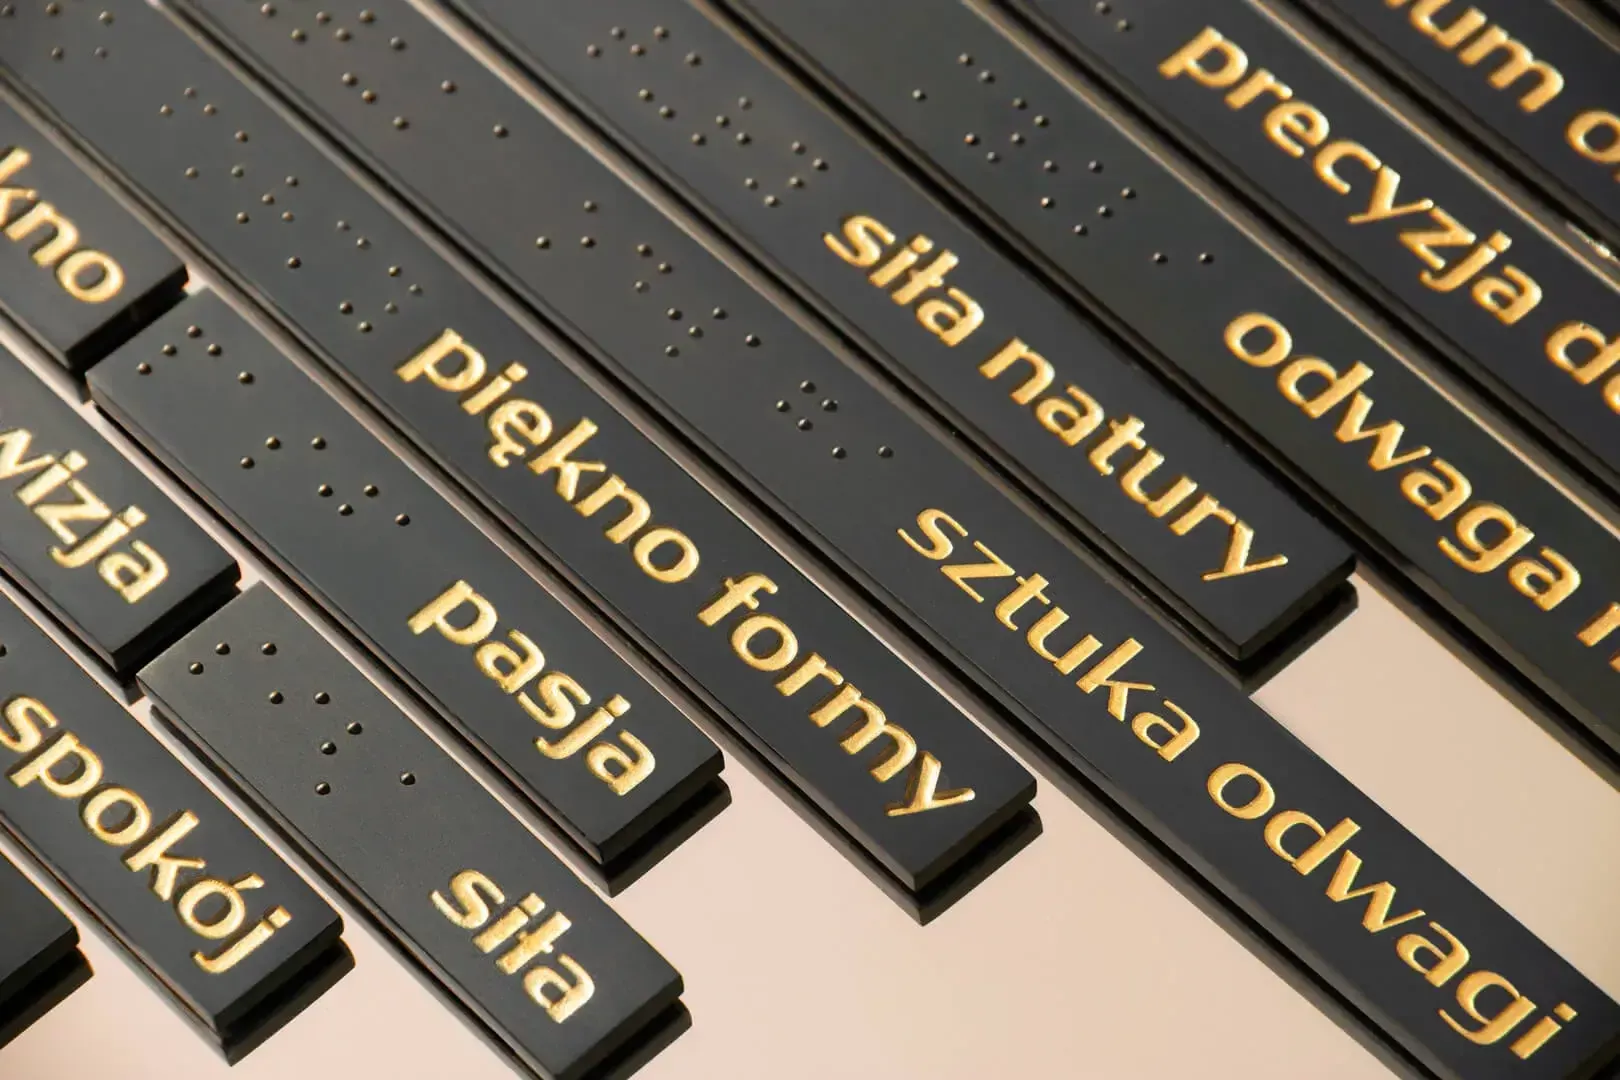 Informationstafel - goldene Buchstaben auf einer schwarzen Platte und Braille-Schrift